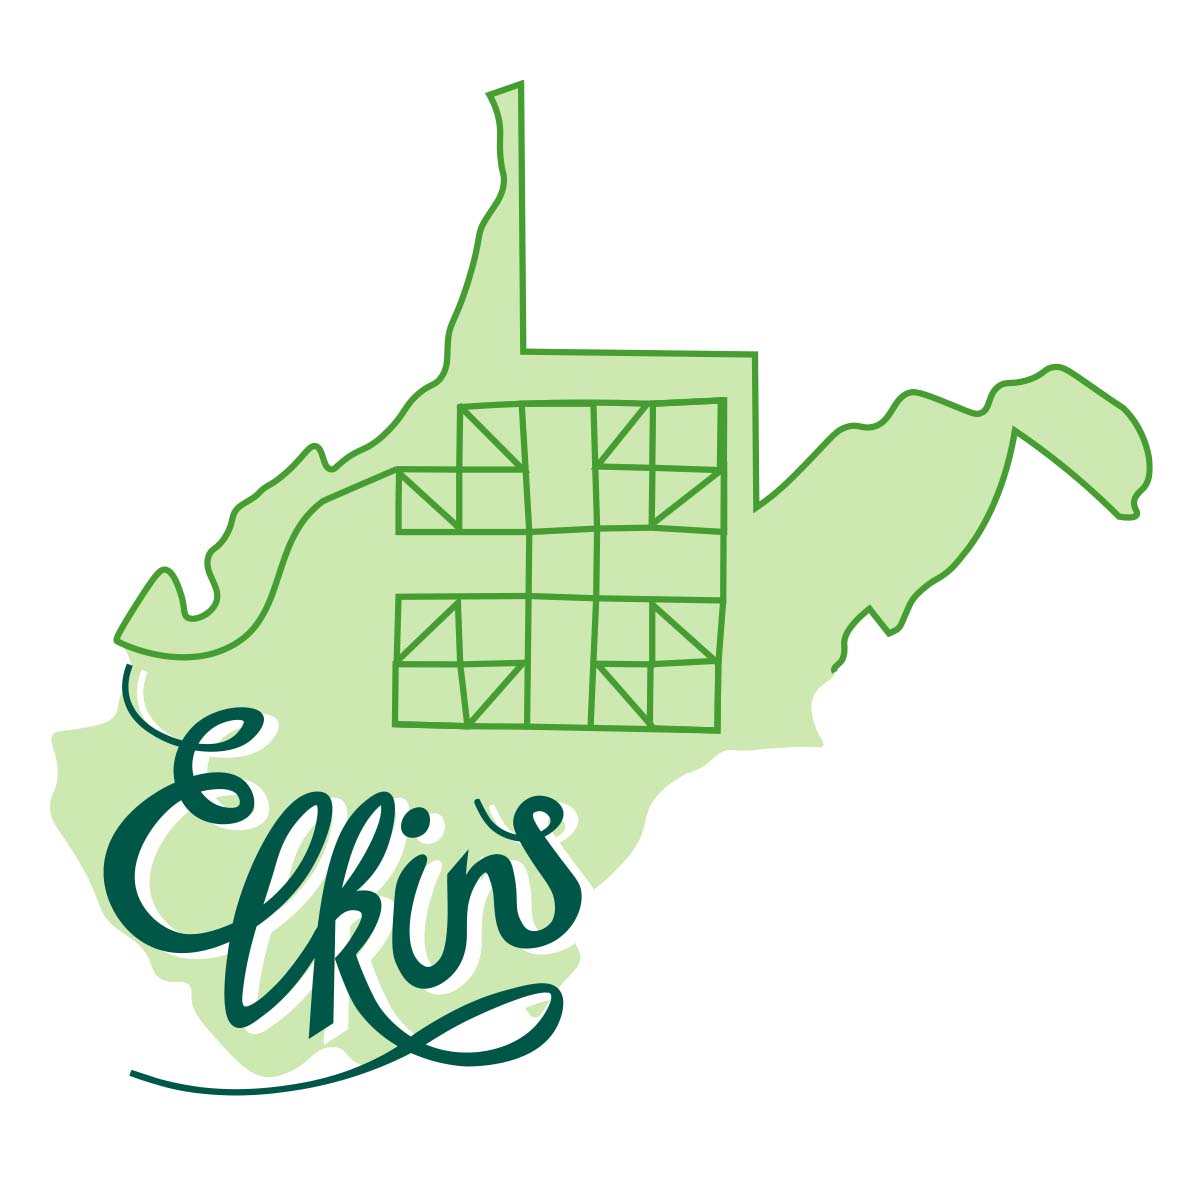 Elkins quilt festival logo variation